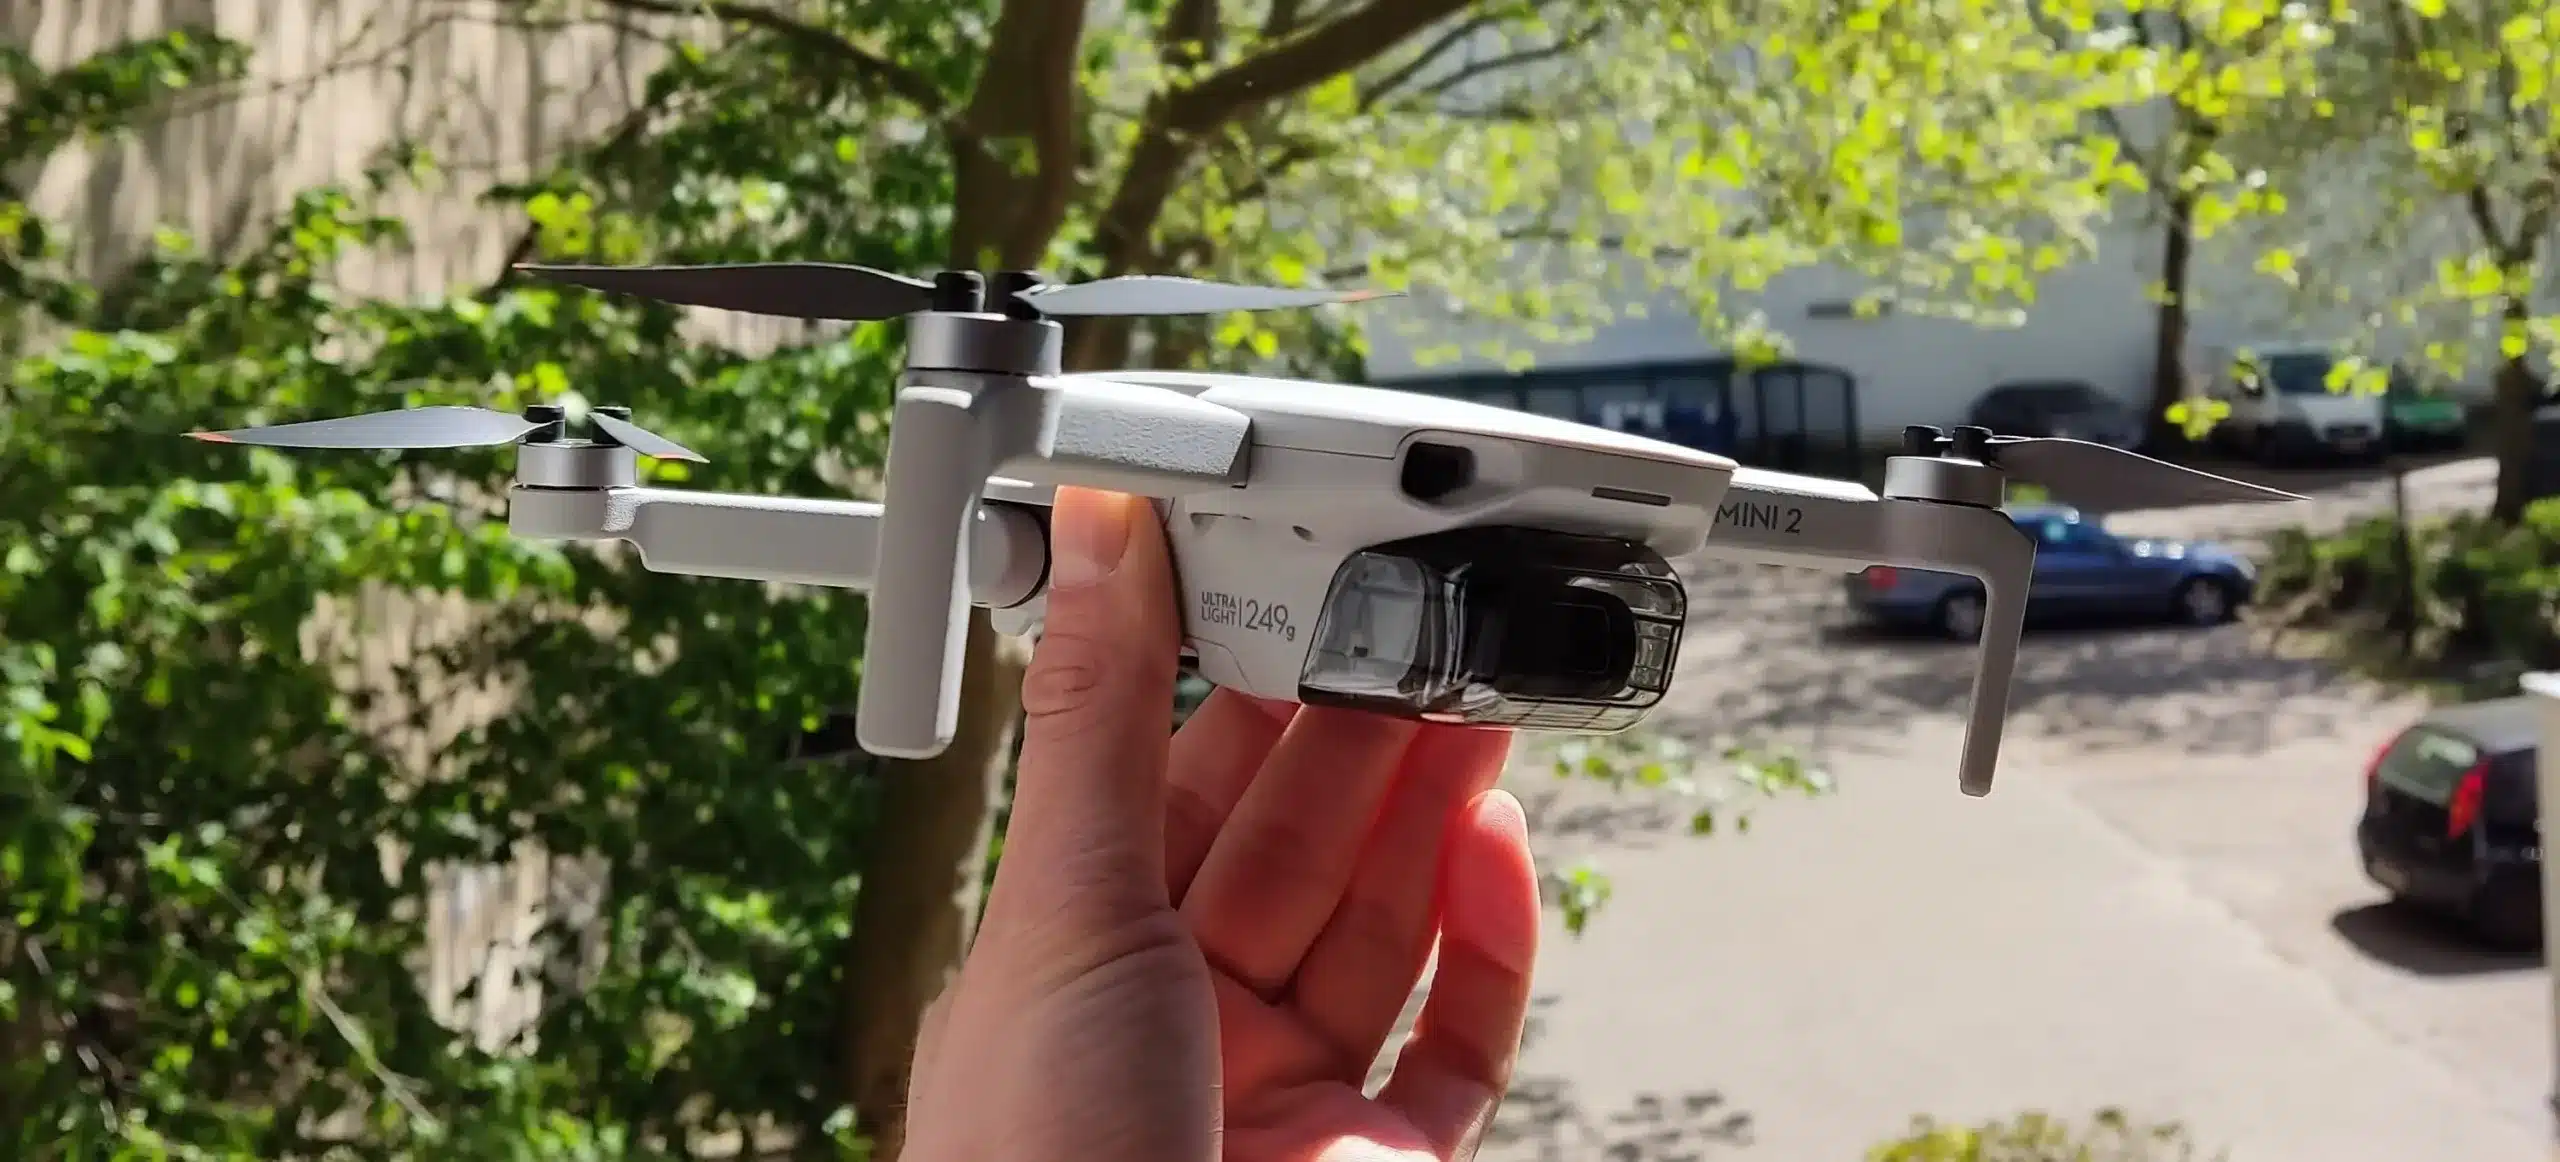 Drohne DJI Mini 2 wird in der Hand gehalten im Hintergrund Bäume und ein Parkplatz